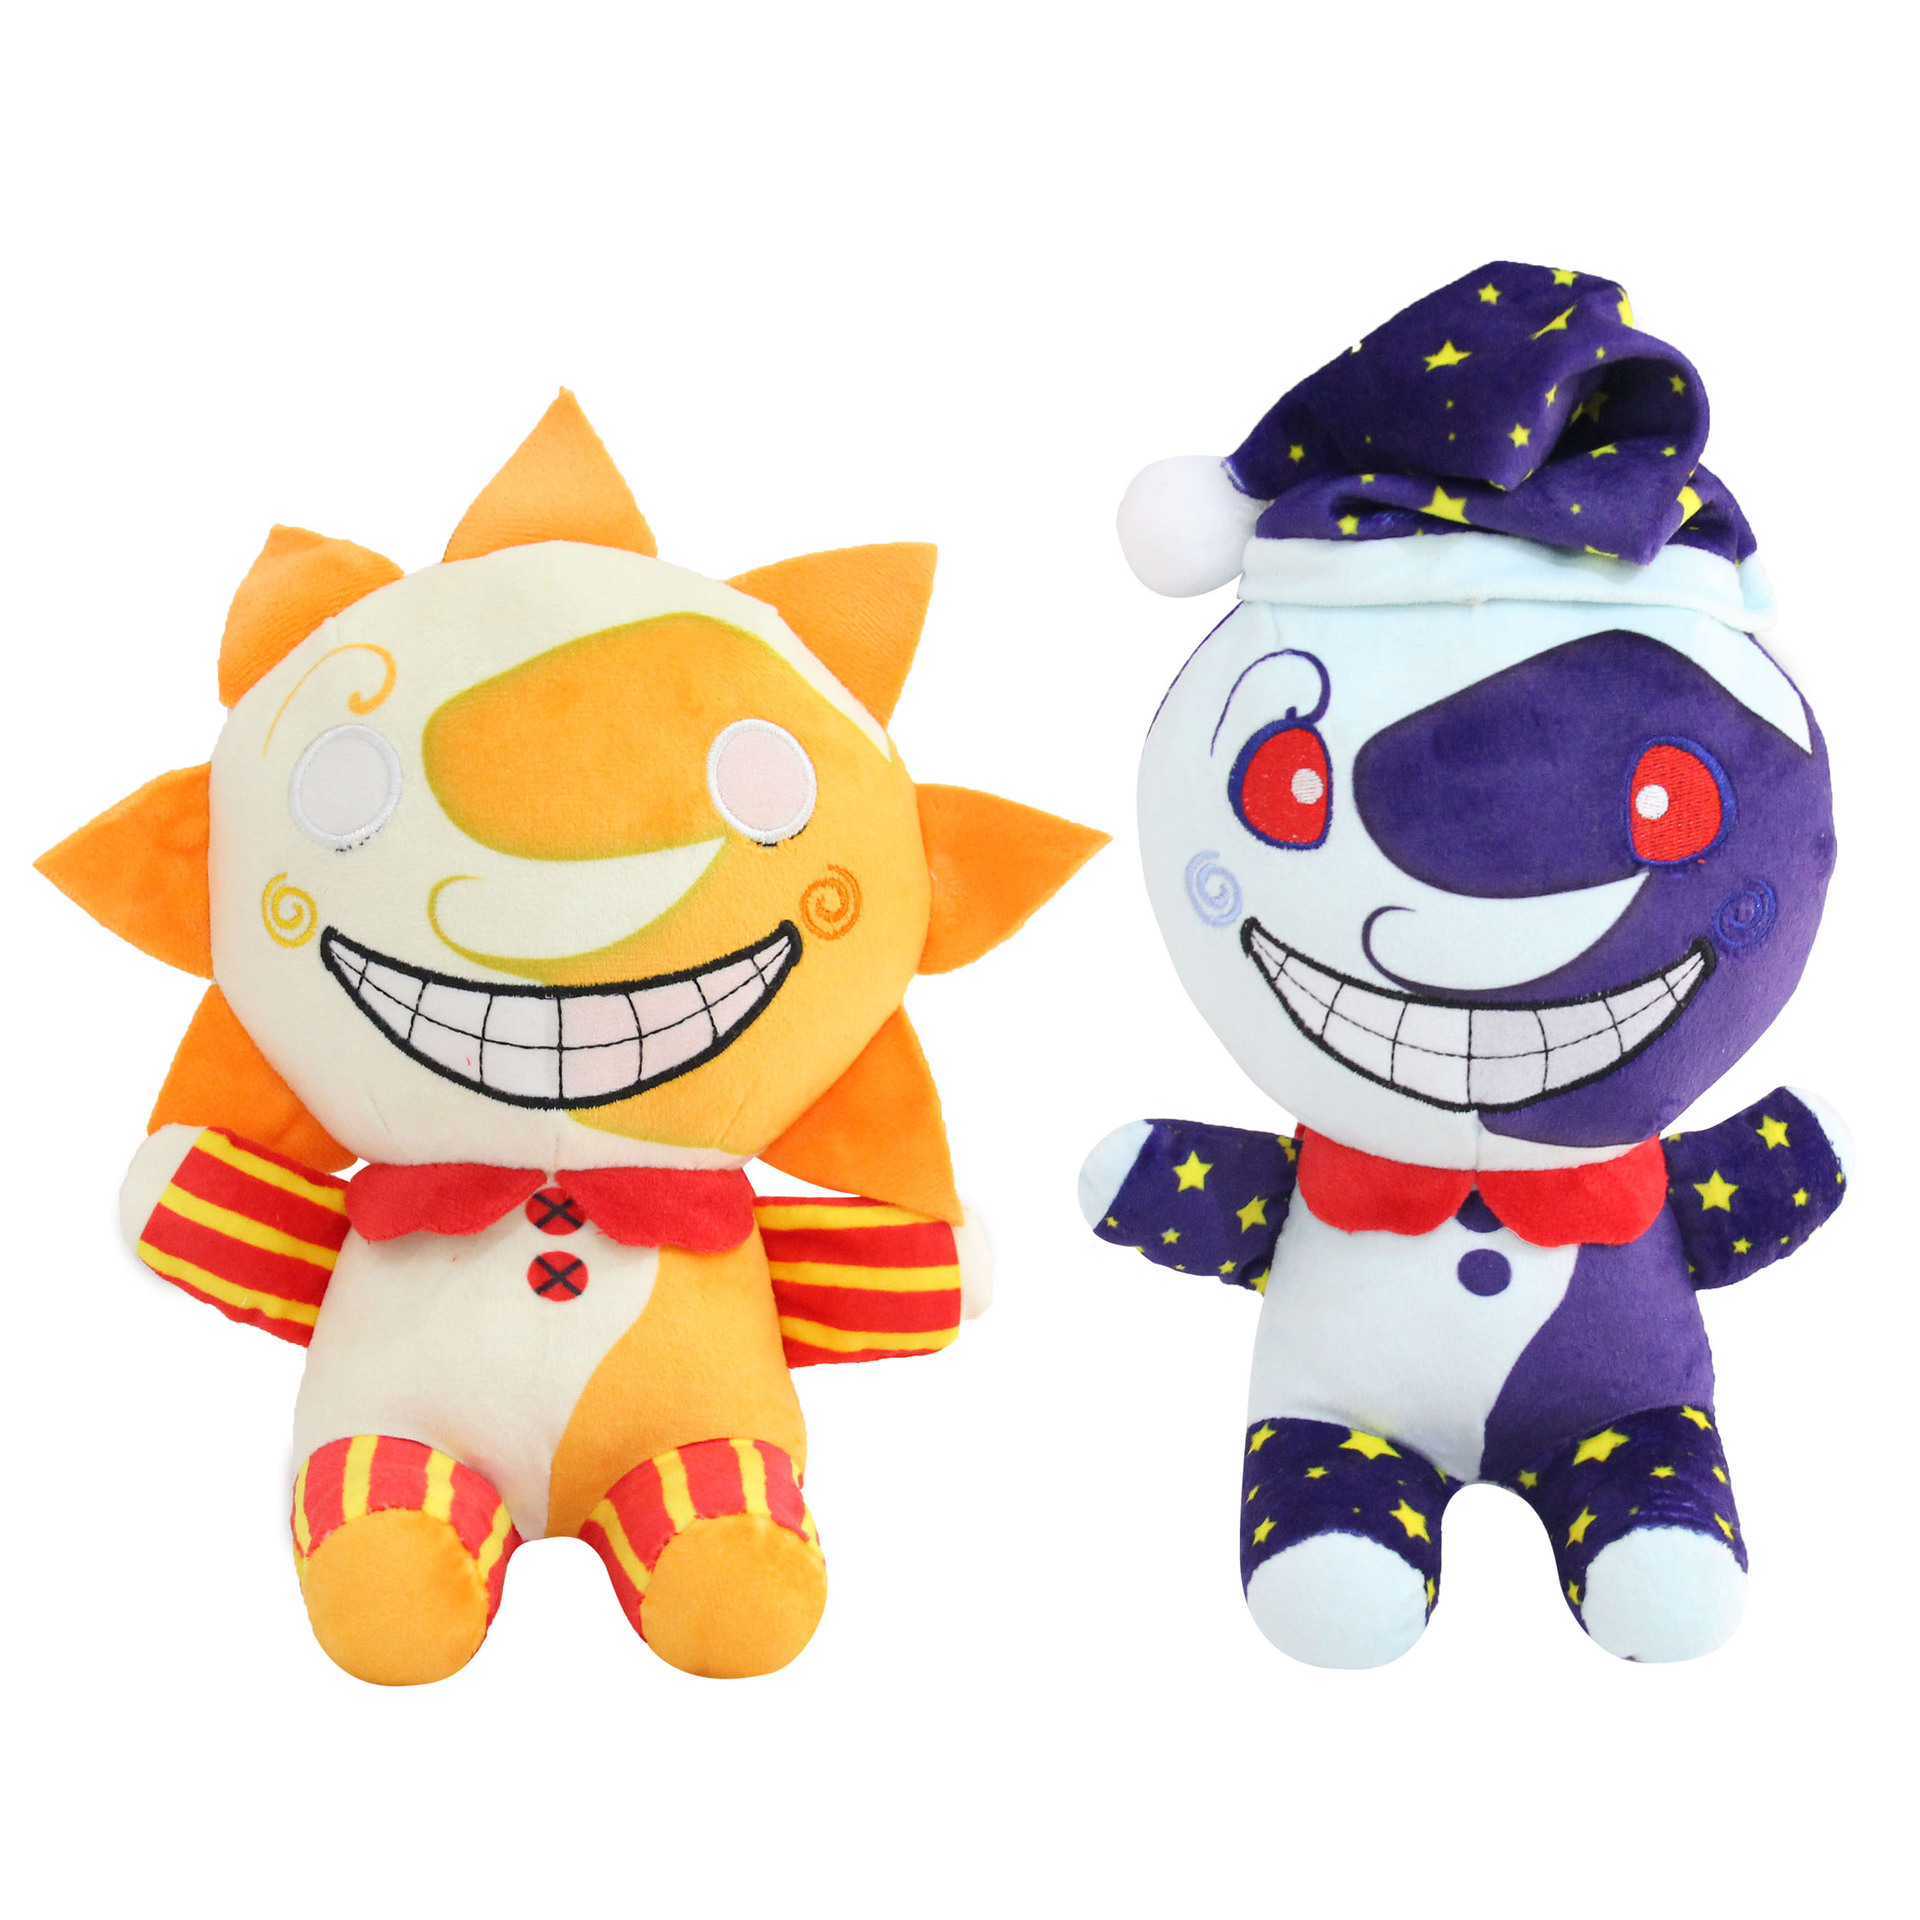 NEUE FNAF SUN DROP PLUSH DULLS TOYS SECORY BREACH SUNRISE FNAF Boss Sun Moon Joker Game Doll Geschenk